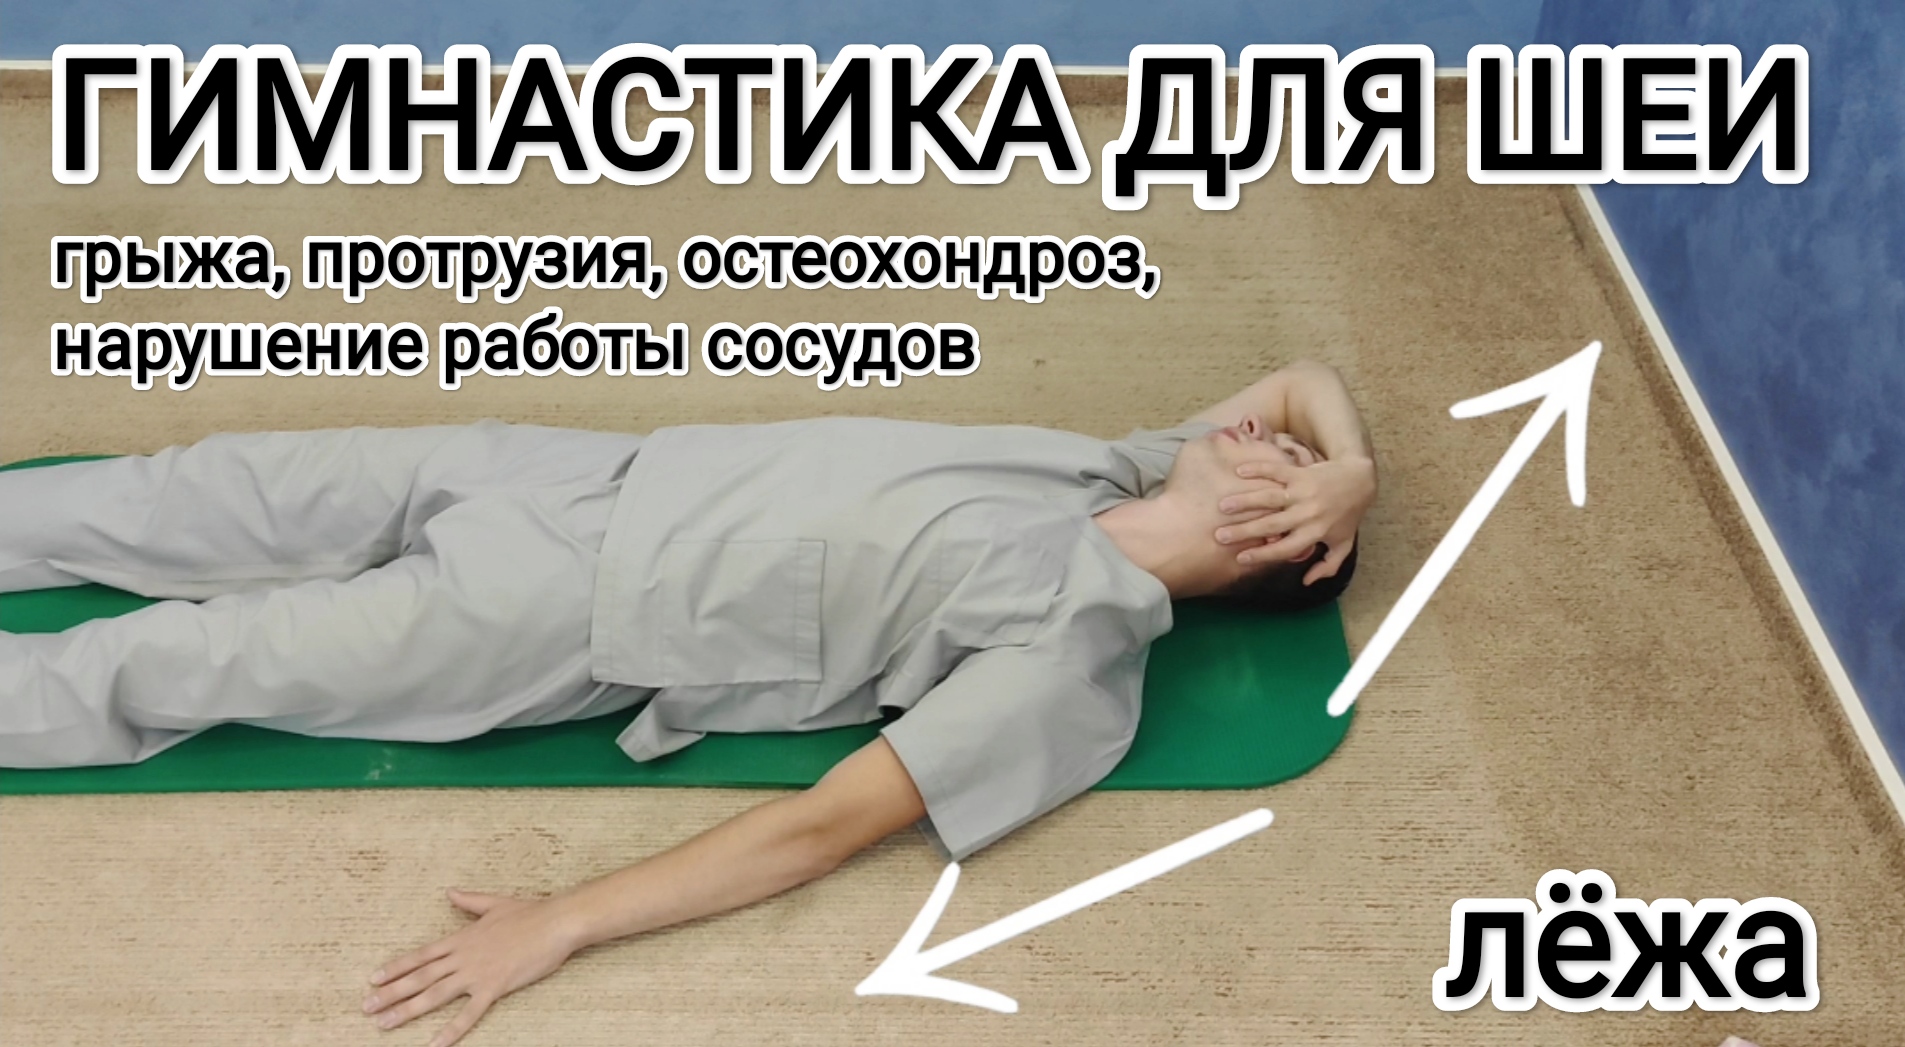 Видео упражнения для позвоночника шее. Гимнастика Григория Игнатьева. Грыжа шеи упражнения.